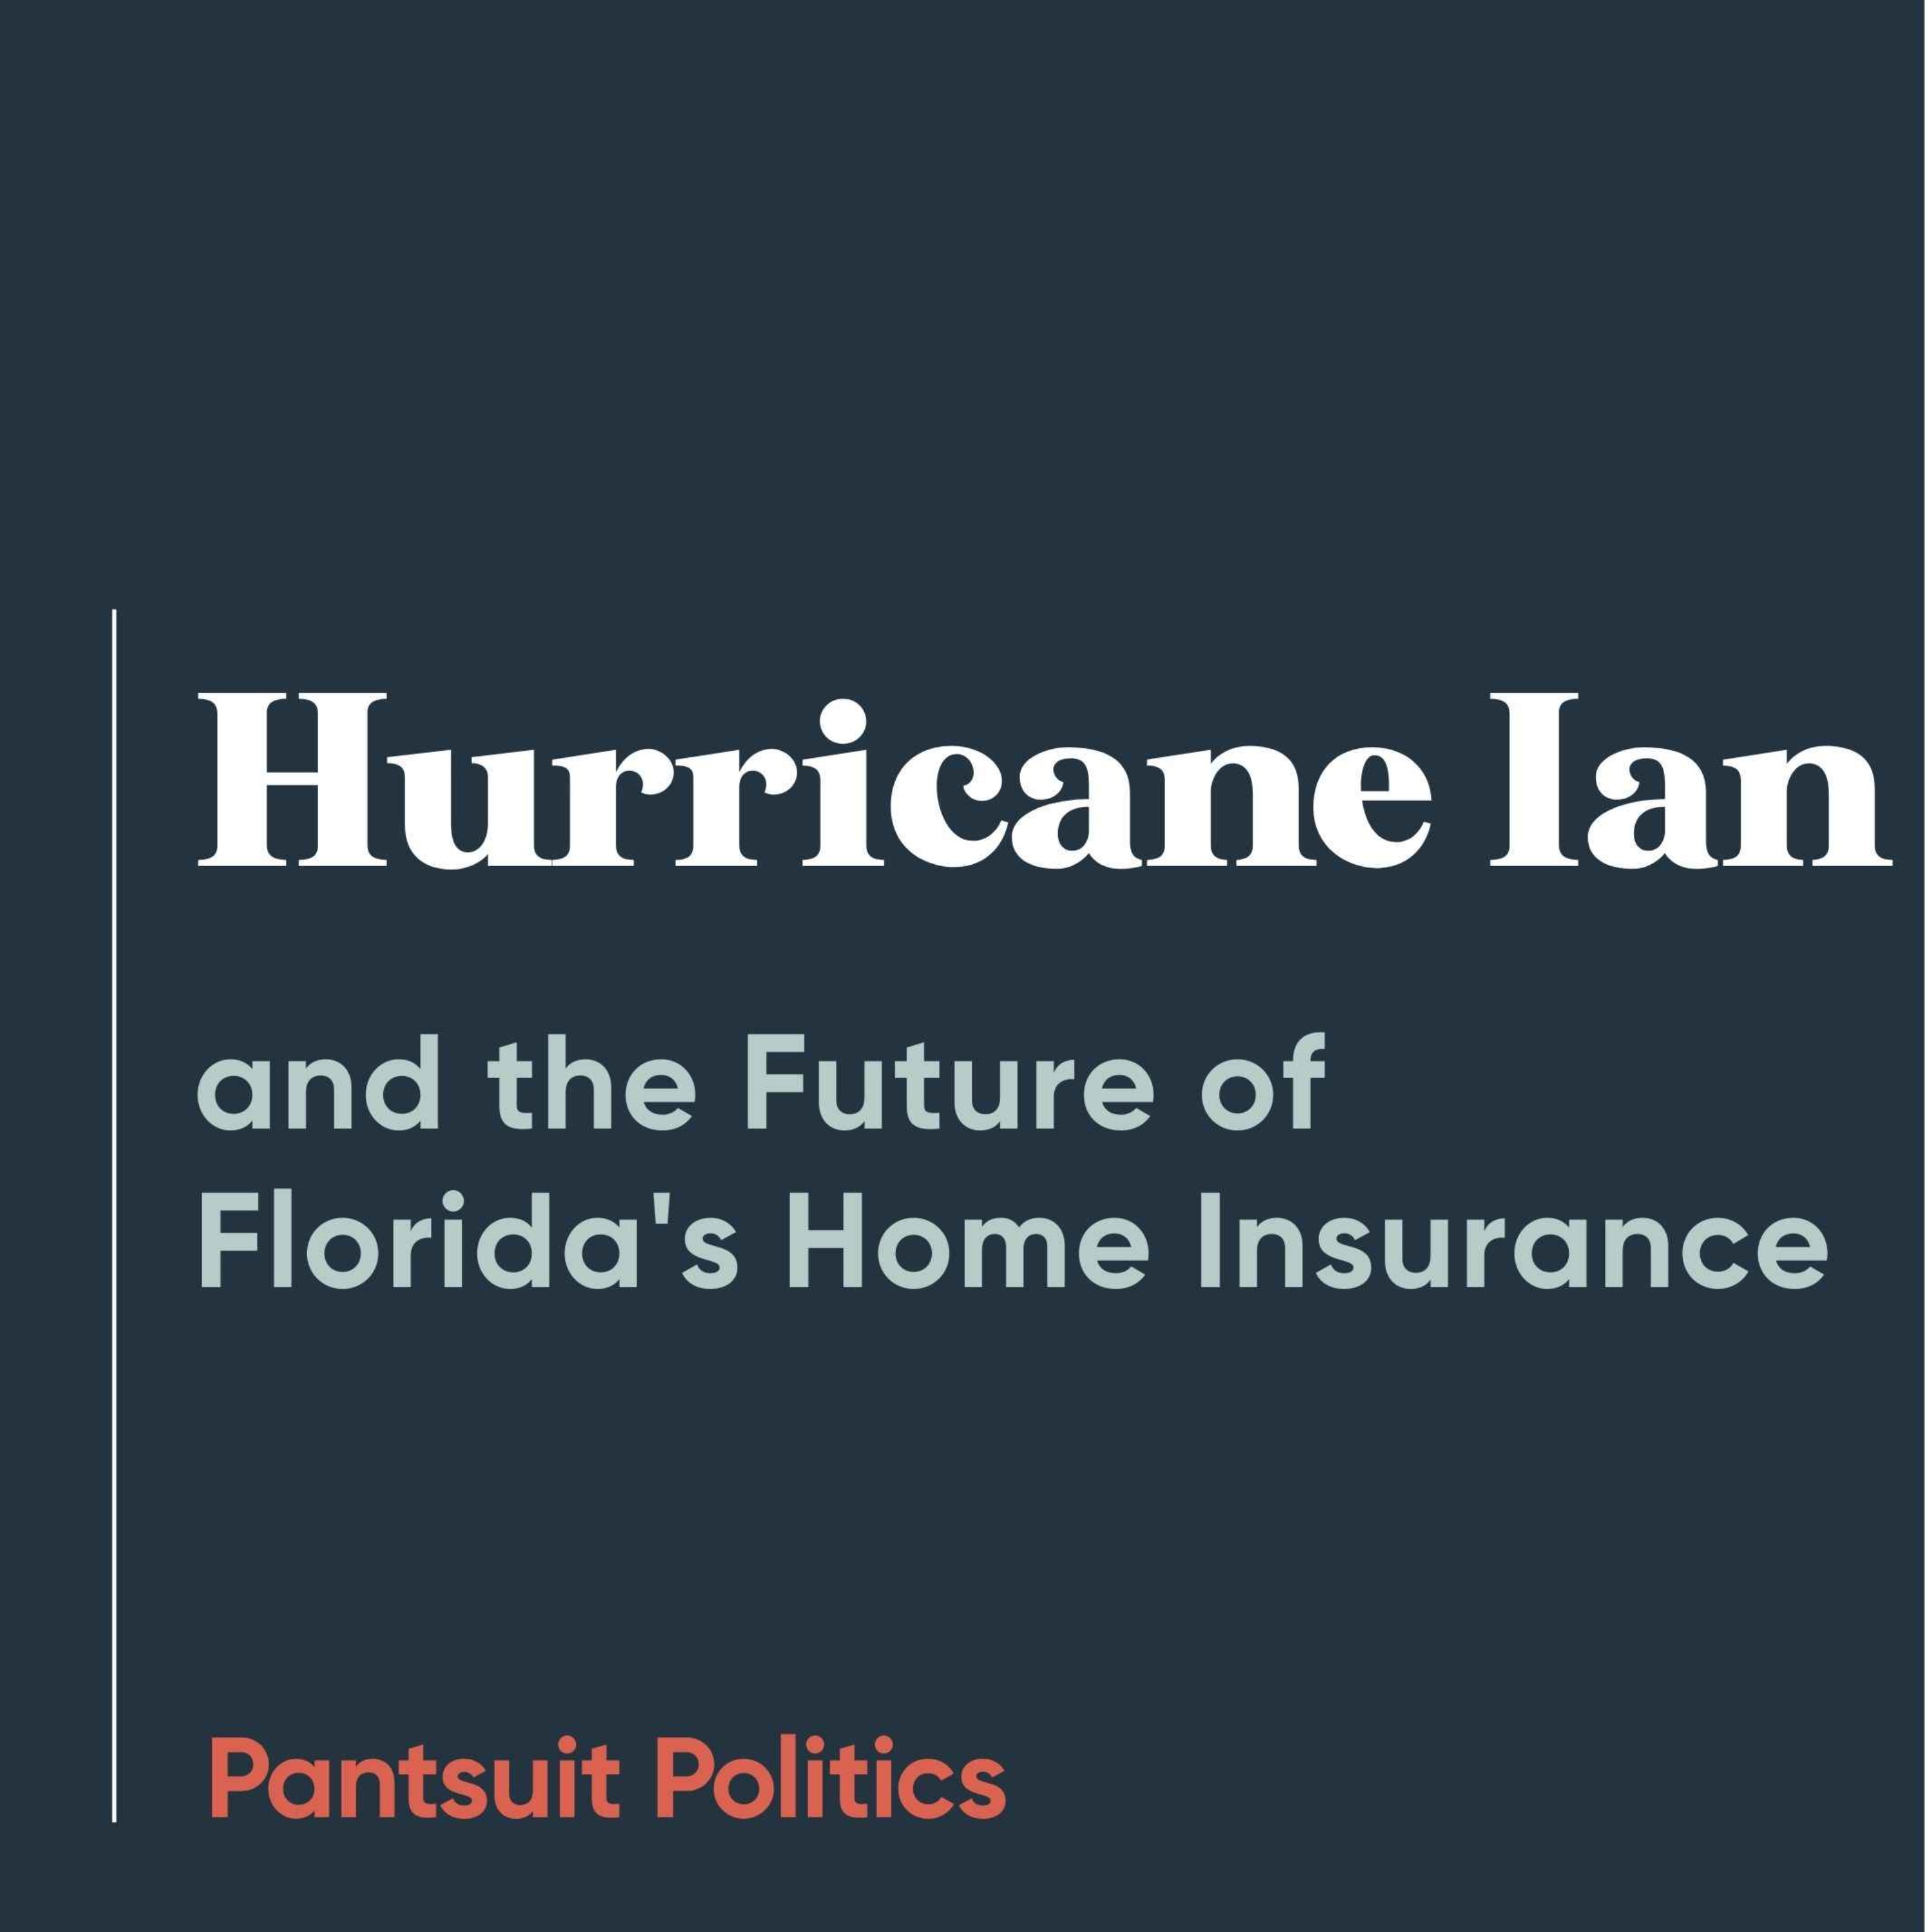 Hurricane Ian and the Future of Florida's Home Insurance